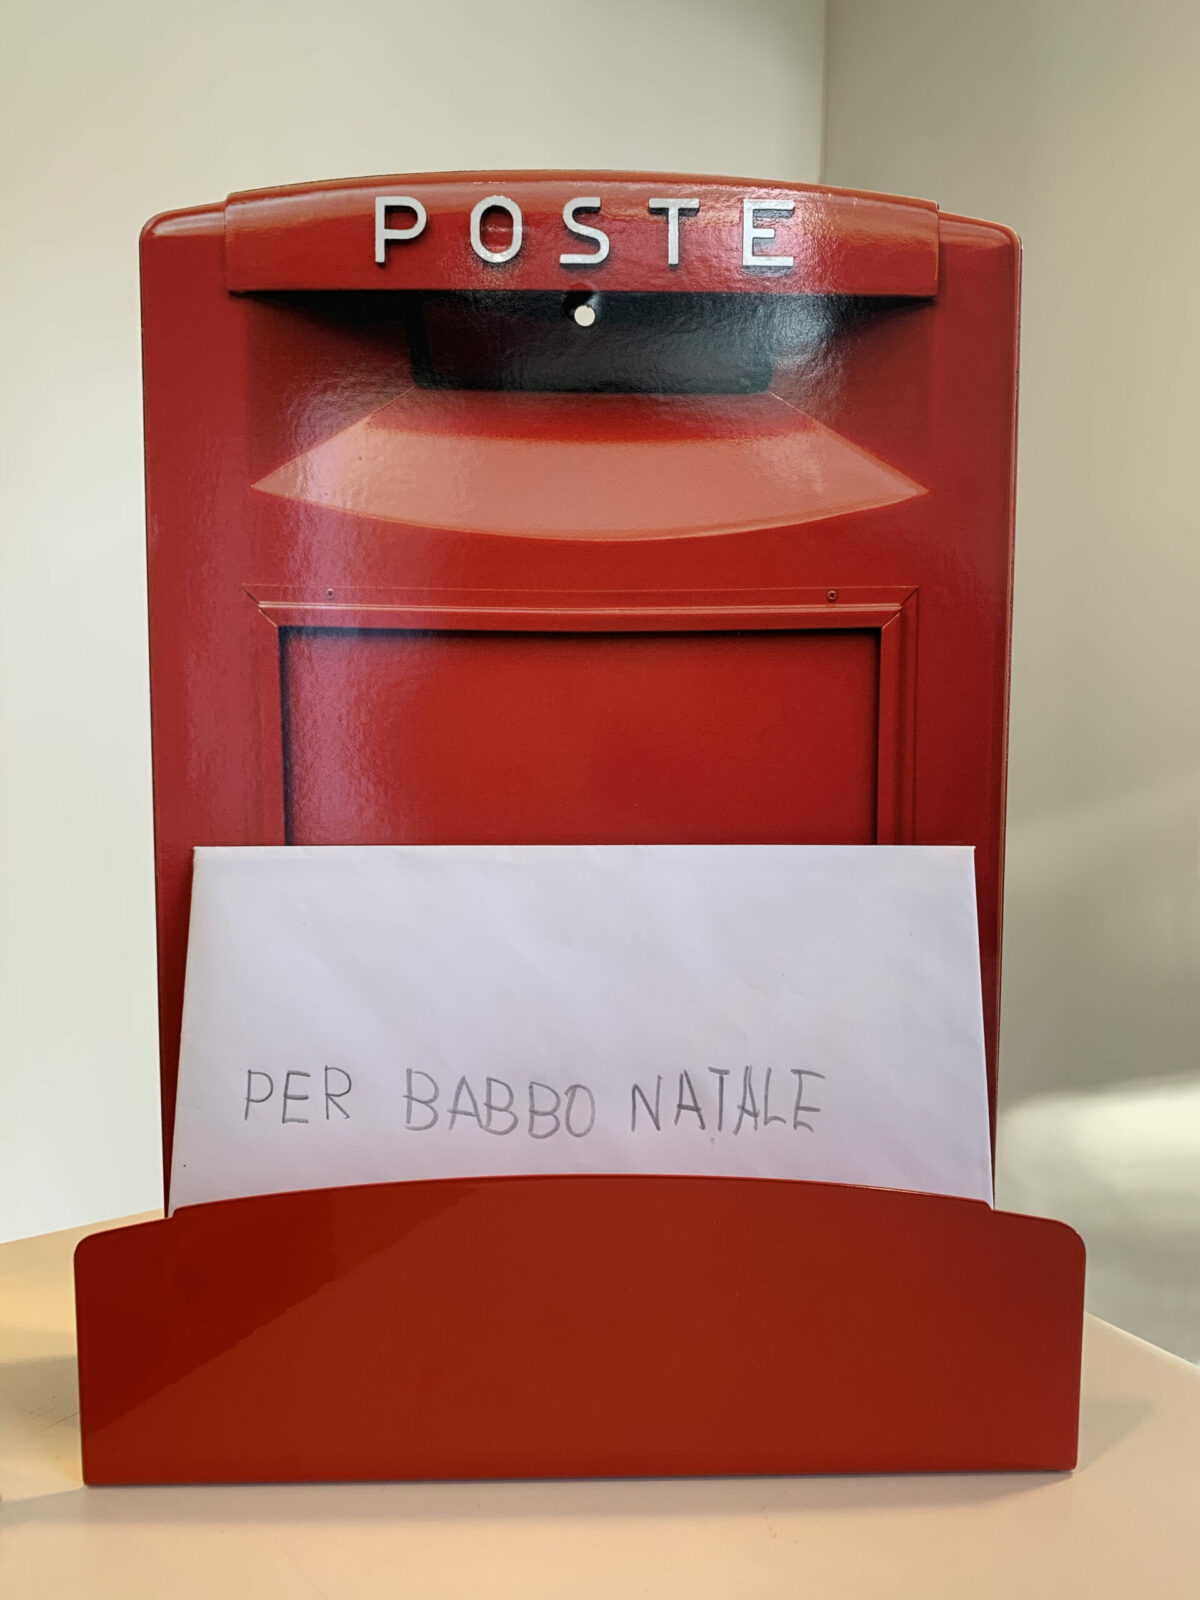 un porta lettere rosso a forma di cassetta postale italiana custodisce una lettera indirizzata a babbo natale